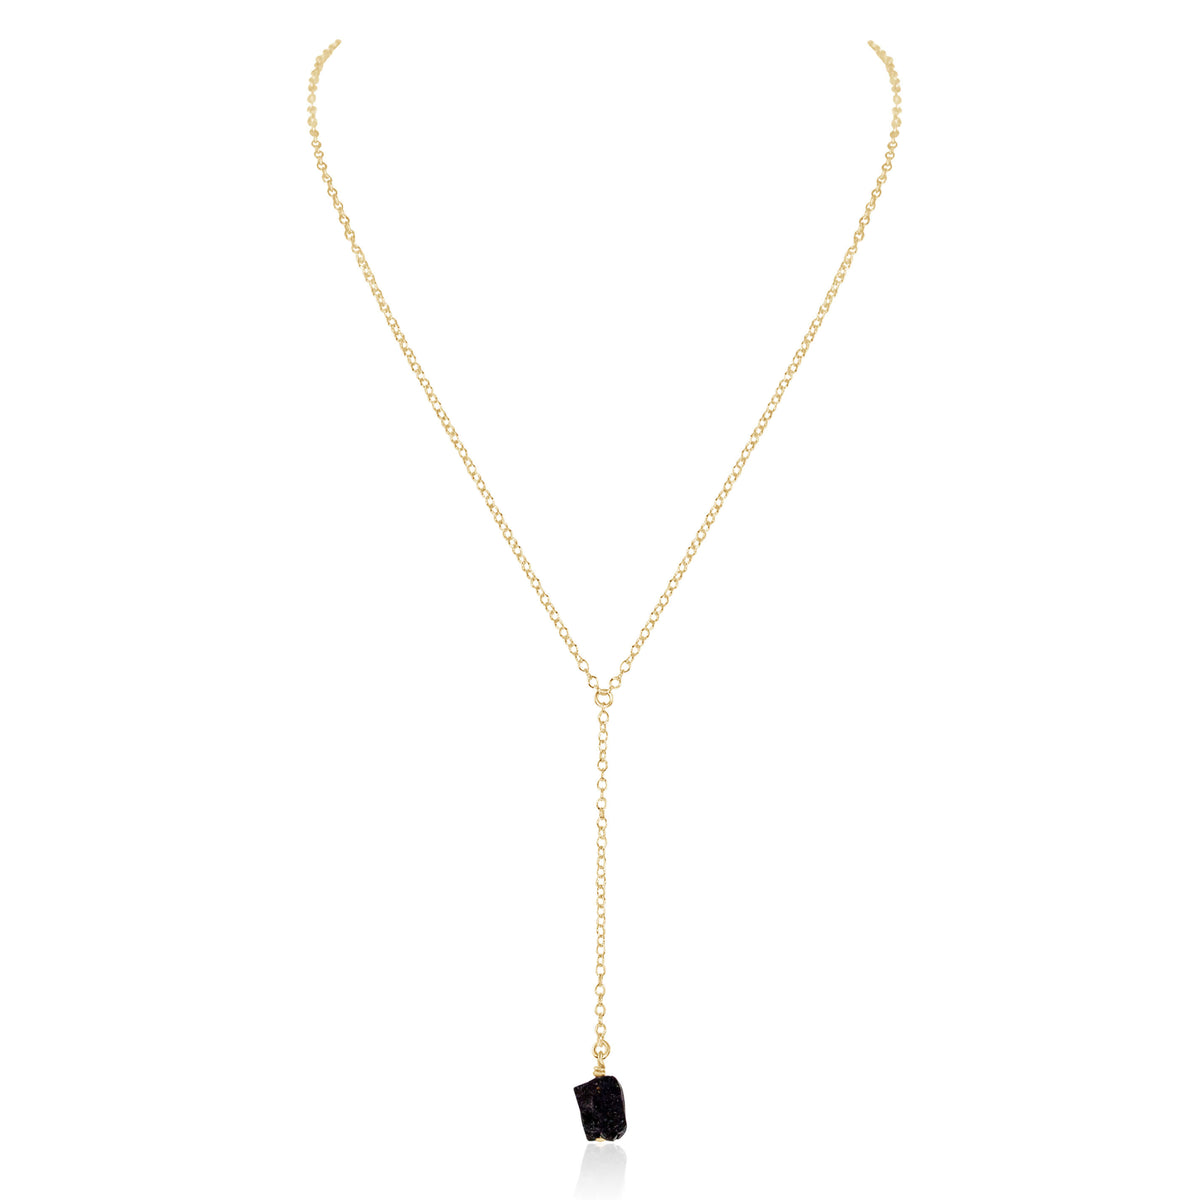 Raw Nugget Lariat - Black Tourmaline - 14K Gold Fill - Luna Tide Handmade Jewellery